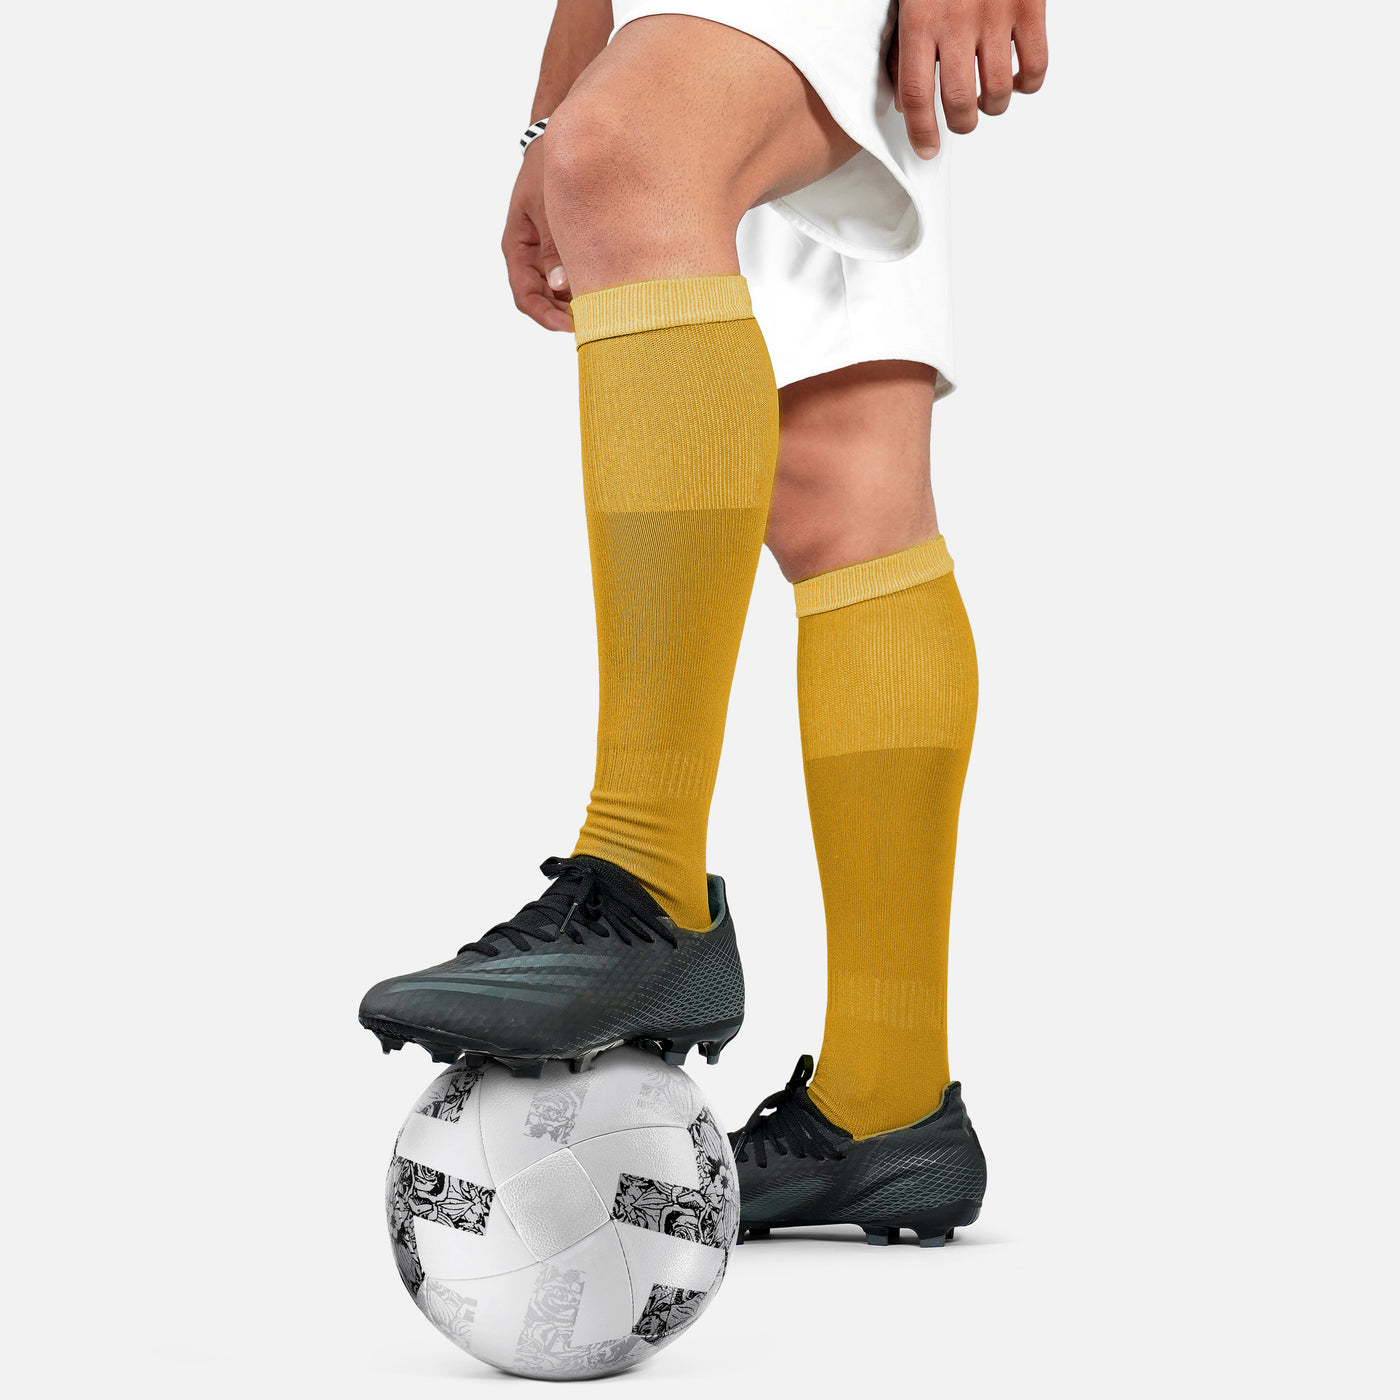 Hue Gold Soccer Knee-High Socks